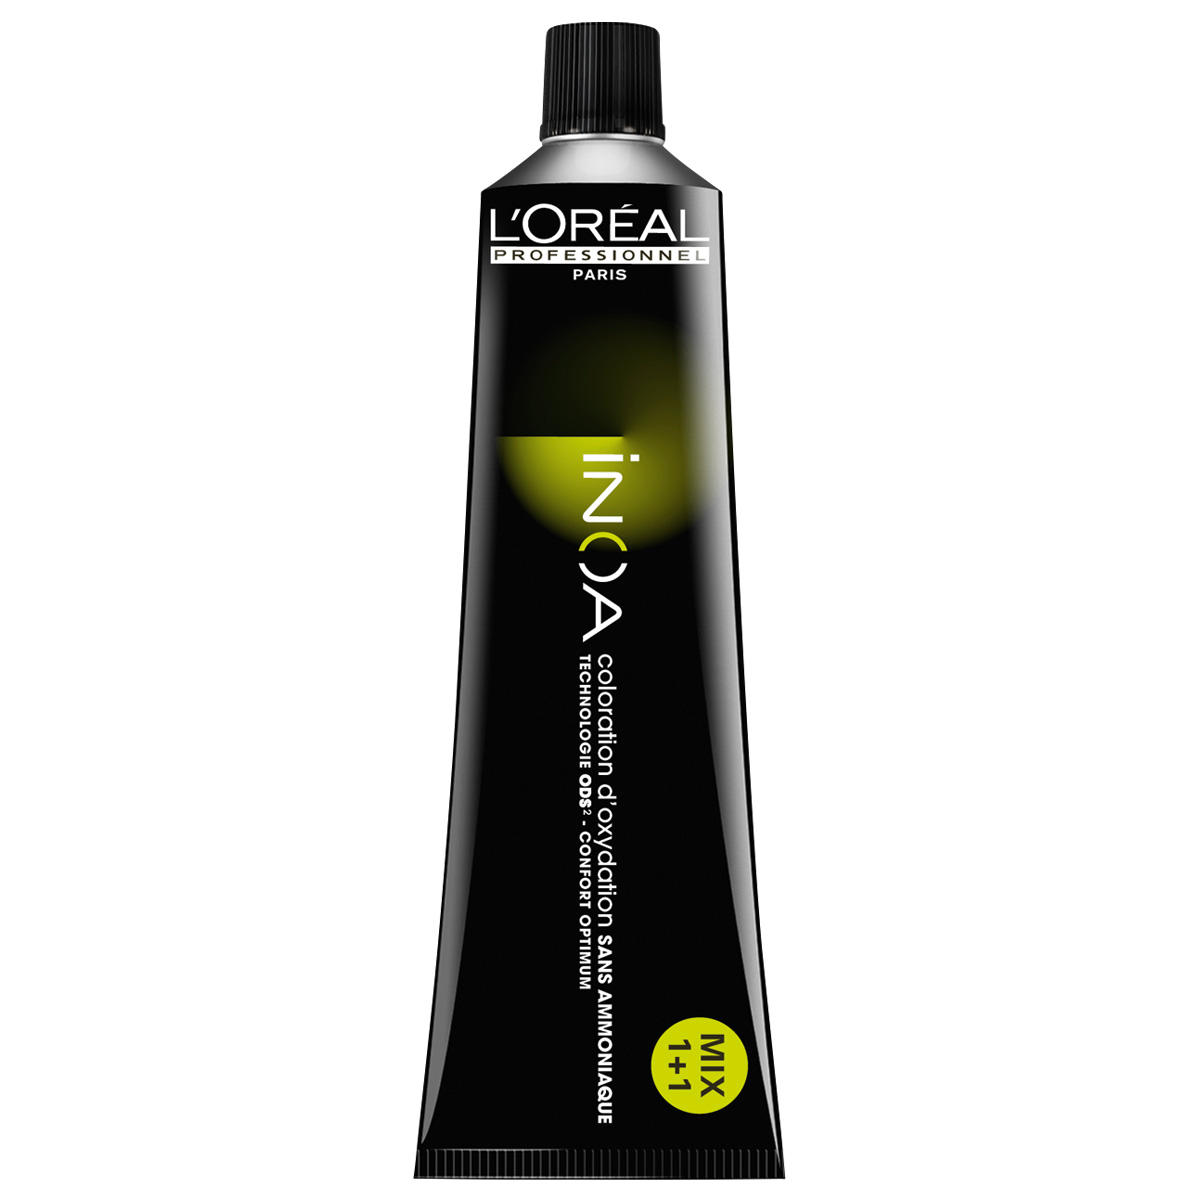 L'Oréal Professionnel Paris Coloration 7.1 Rubio medio ceniza, tubo 60 ml